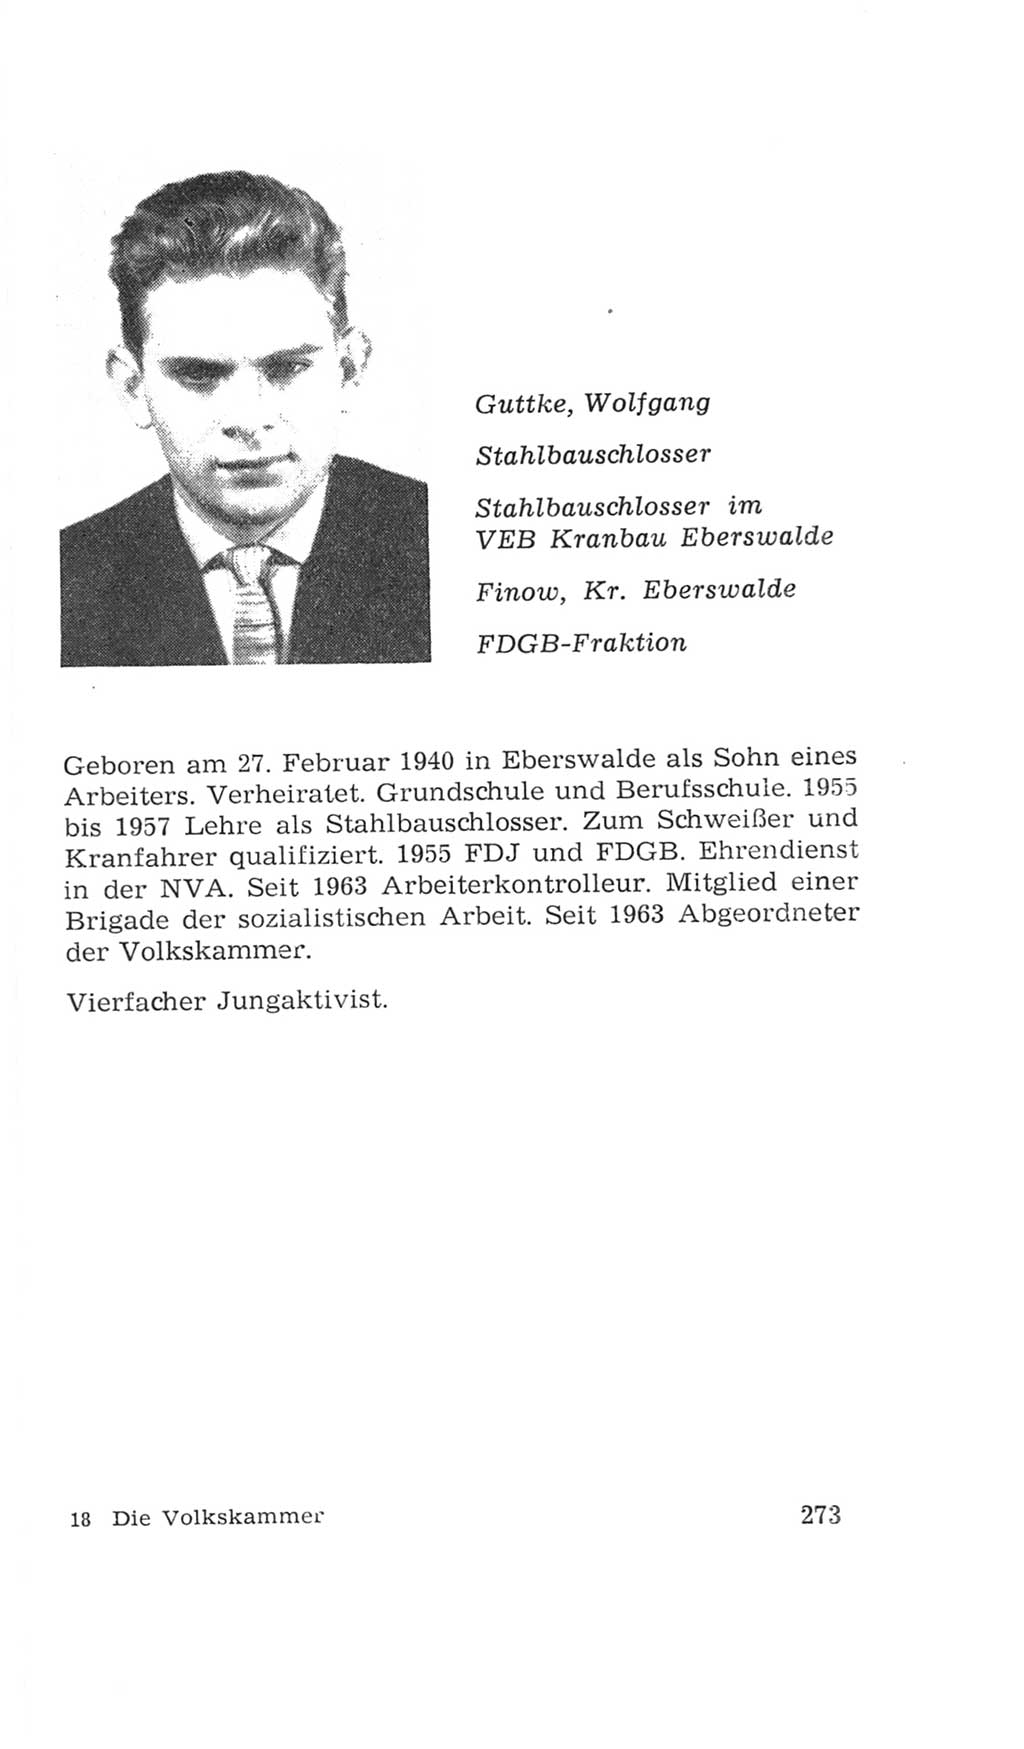 Volkskammer (VK) der Deutschen Demokratischen Republik (DDR), 4. Wahlperiode 1963-1967, Seite 273 (VK. DDR 4. WP. 1963-1967, S. 273)